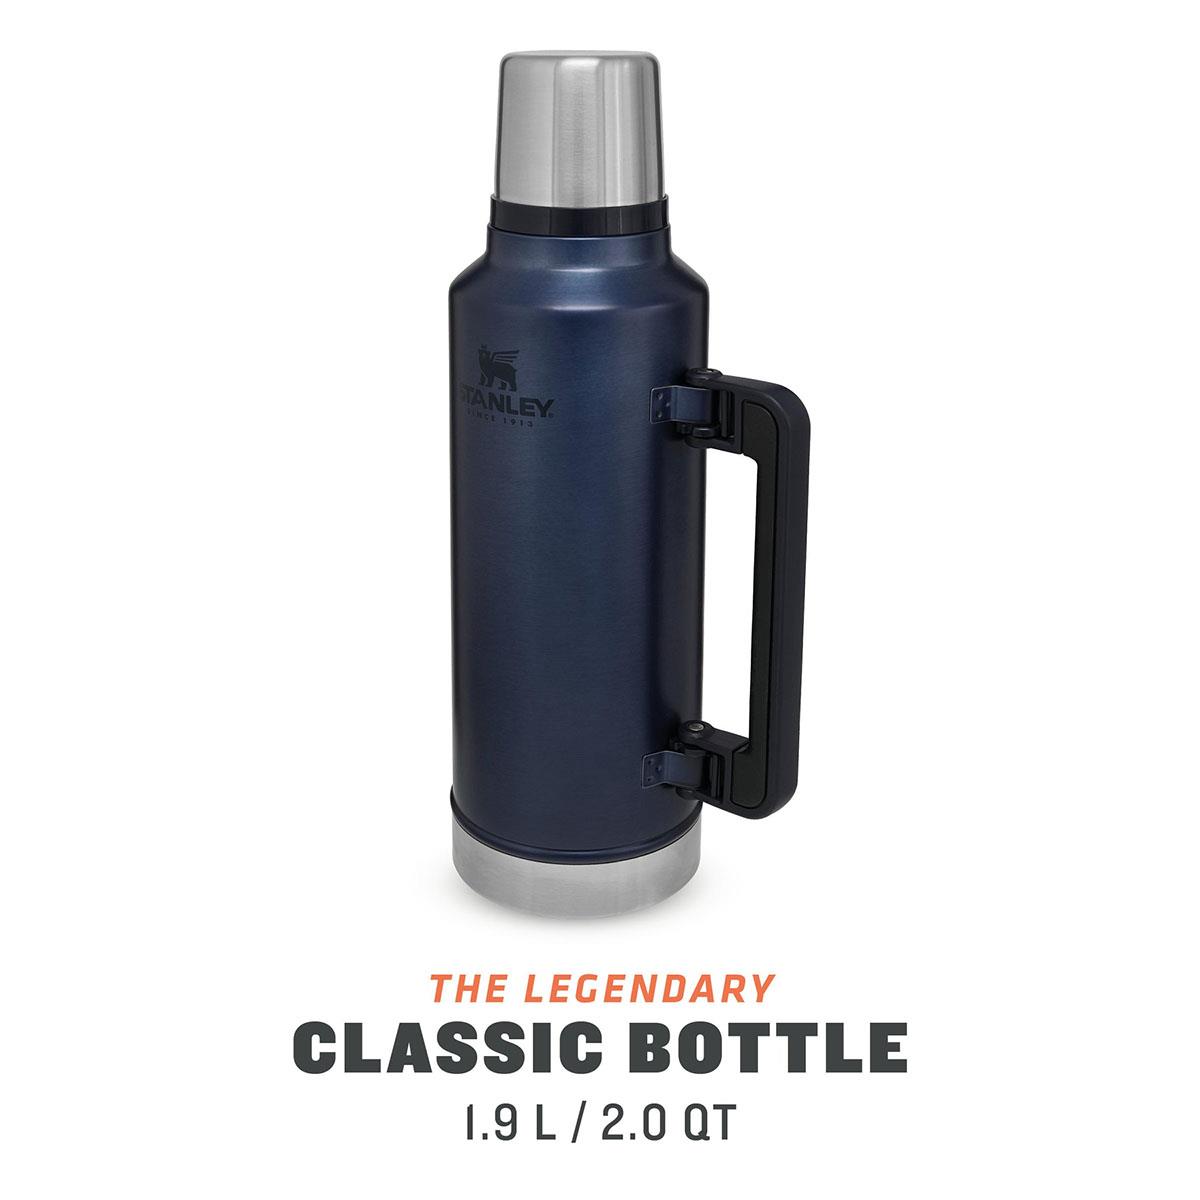  Stanley Classıc Legendary Bottle 1.9L / 2.0QT SP1007934039